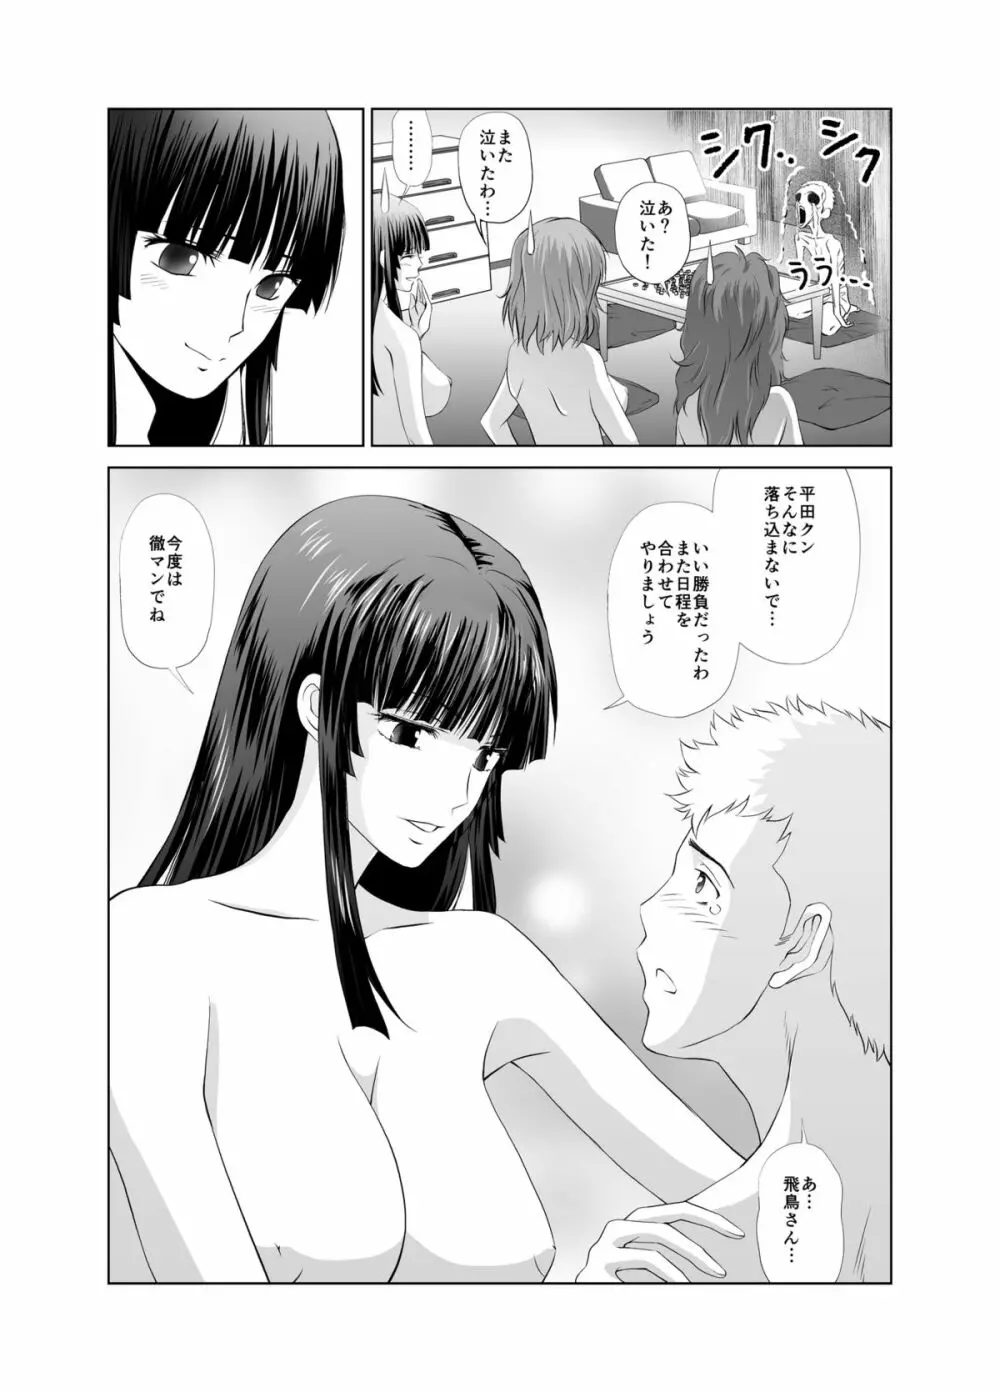 脱衣麻雀～漫画編～【完成版】 30ページ